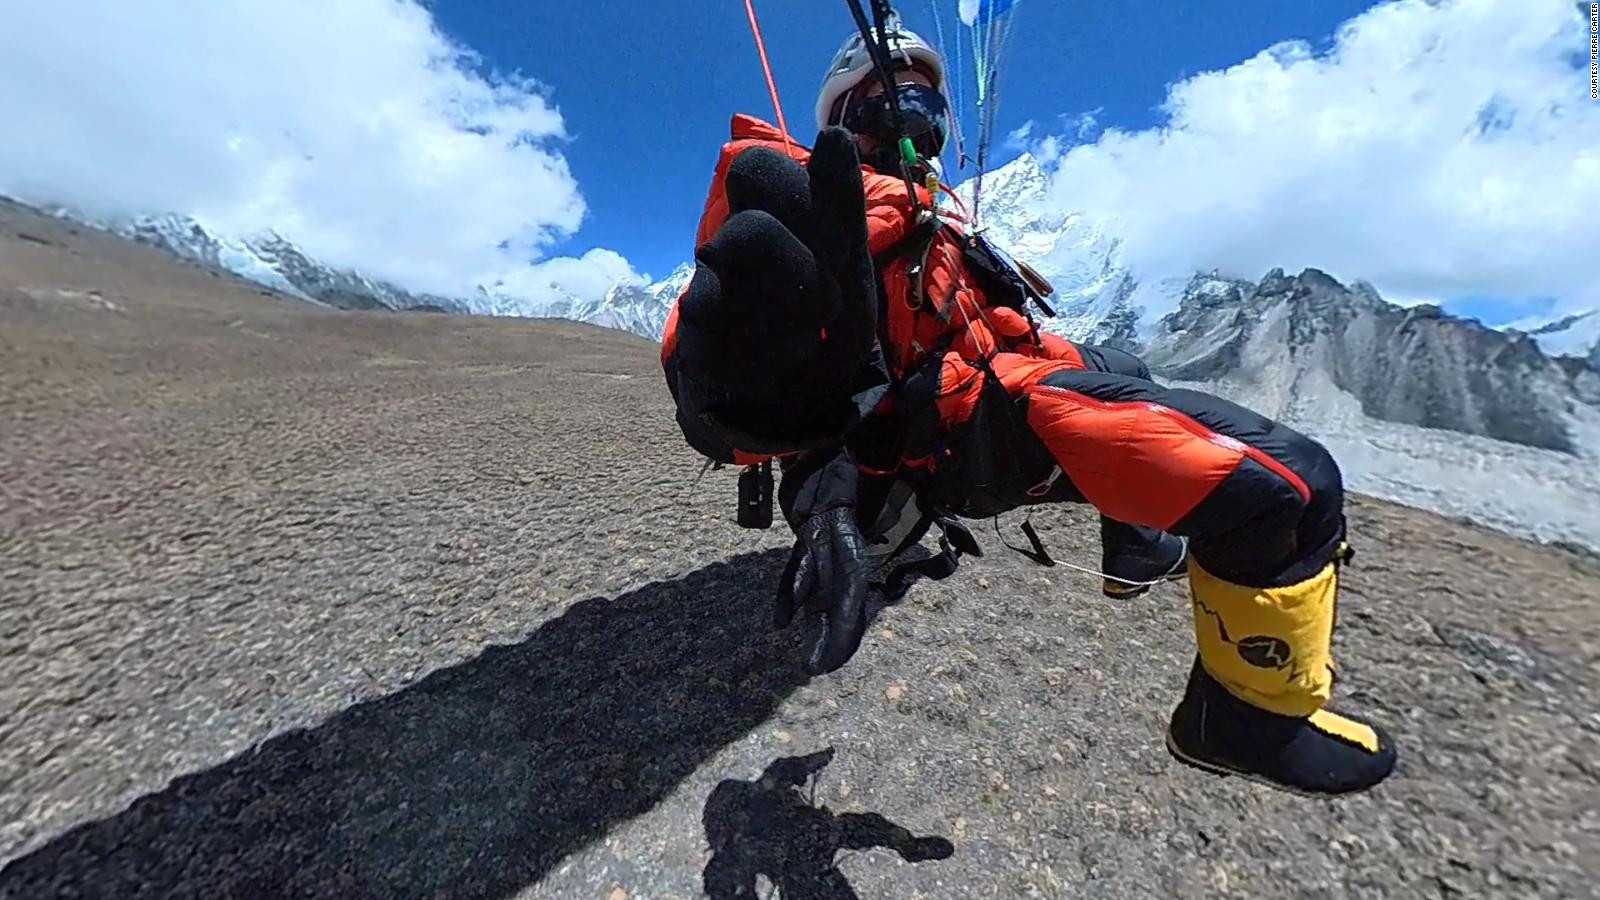 Carter, 55 tuổi, là người gốc Johannesburg, người đã bay từ 6 đỉnh núi cao nhất thế giới. Ảnh: CNN.